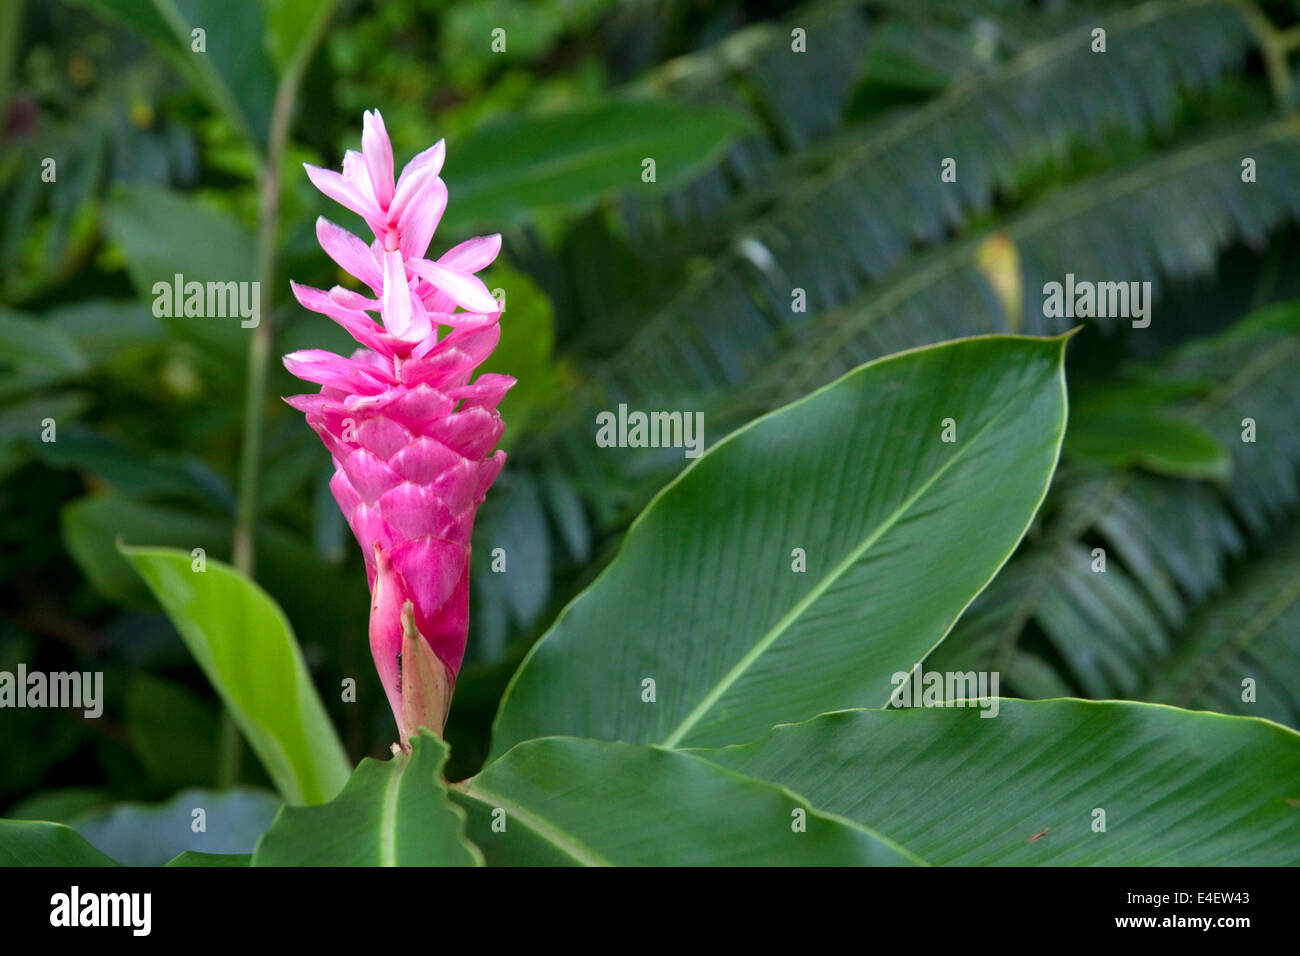 Ginger flower immagini e fotografie stock ad alta risoluzione - Alamy